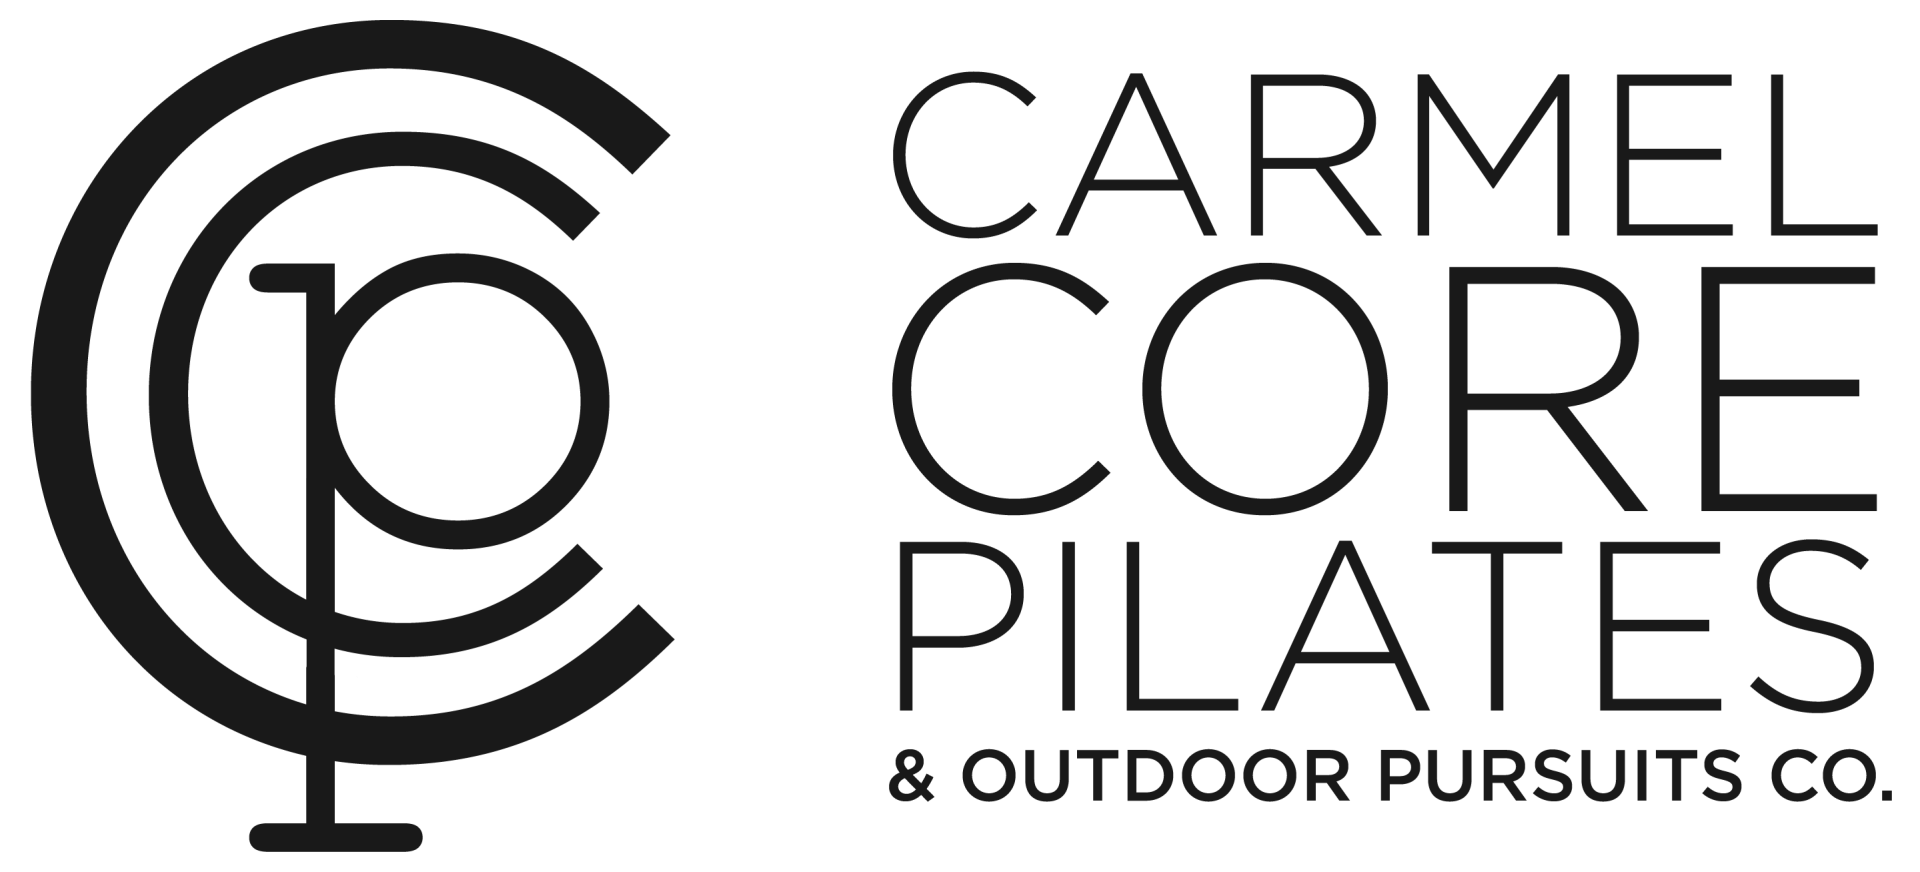 Carmel Core Pilates & Outdoor Pursuits Co.